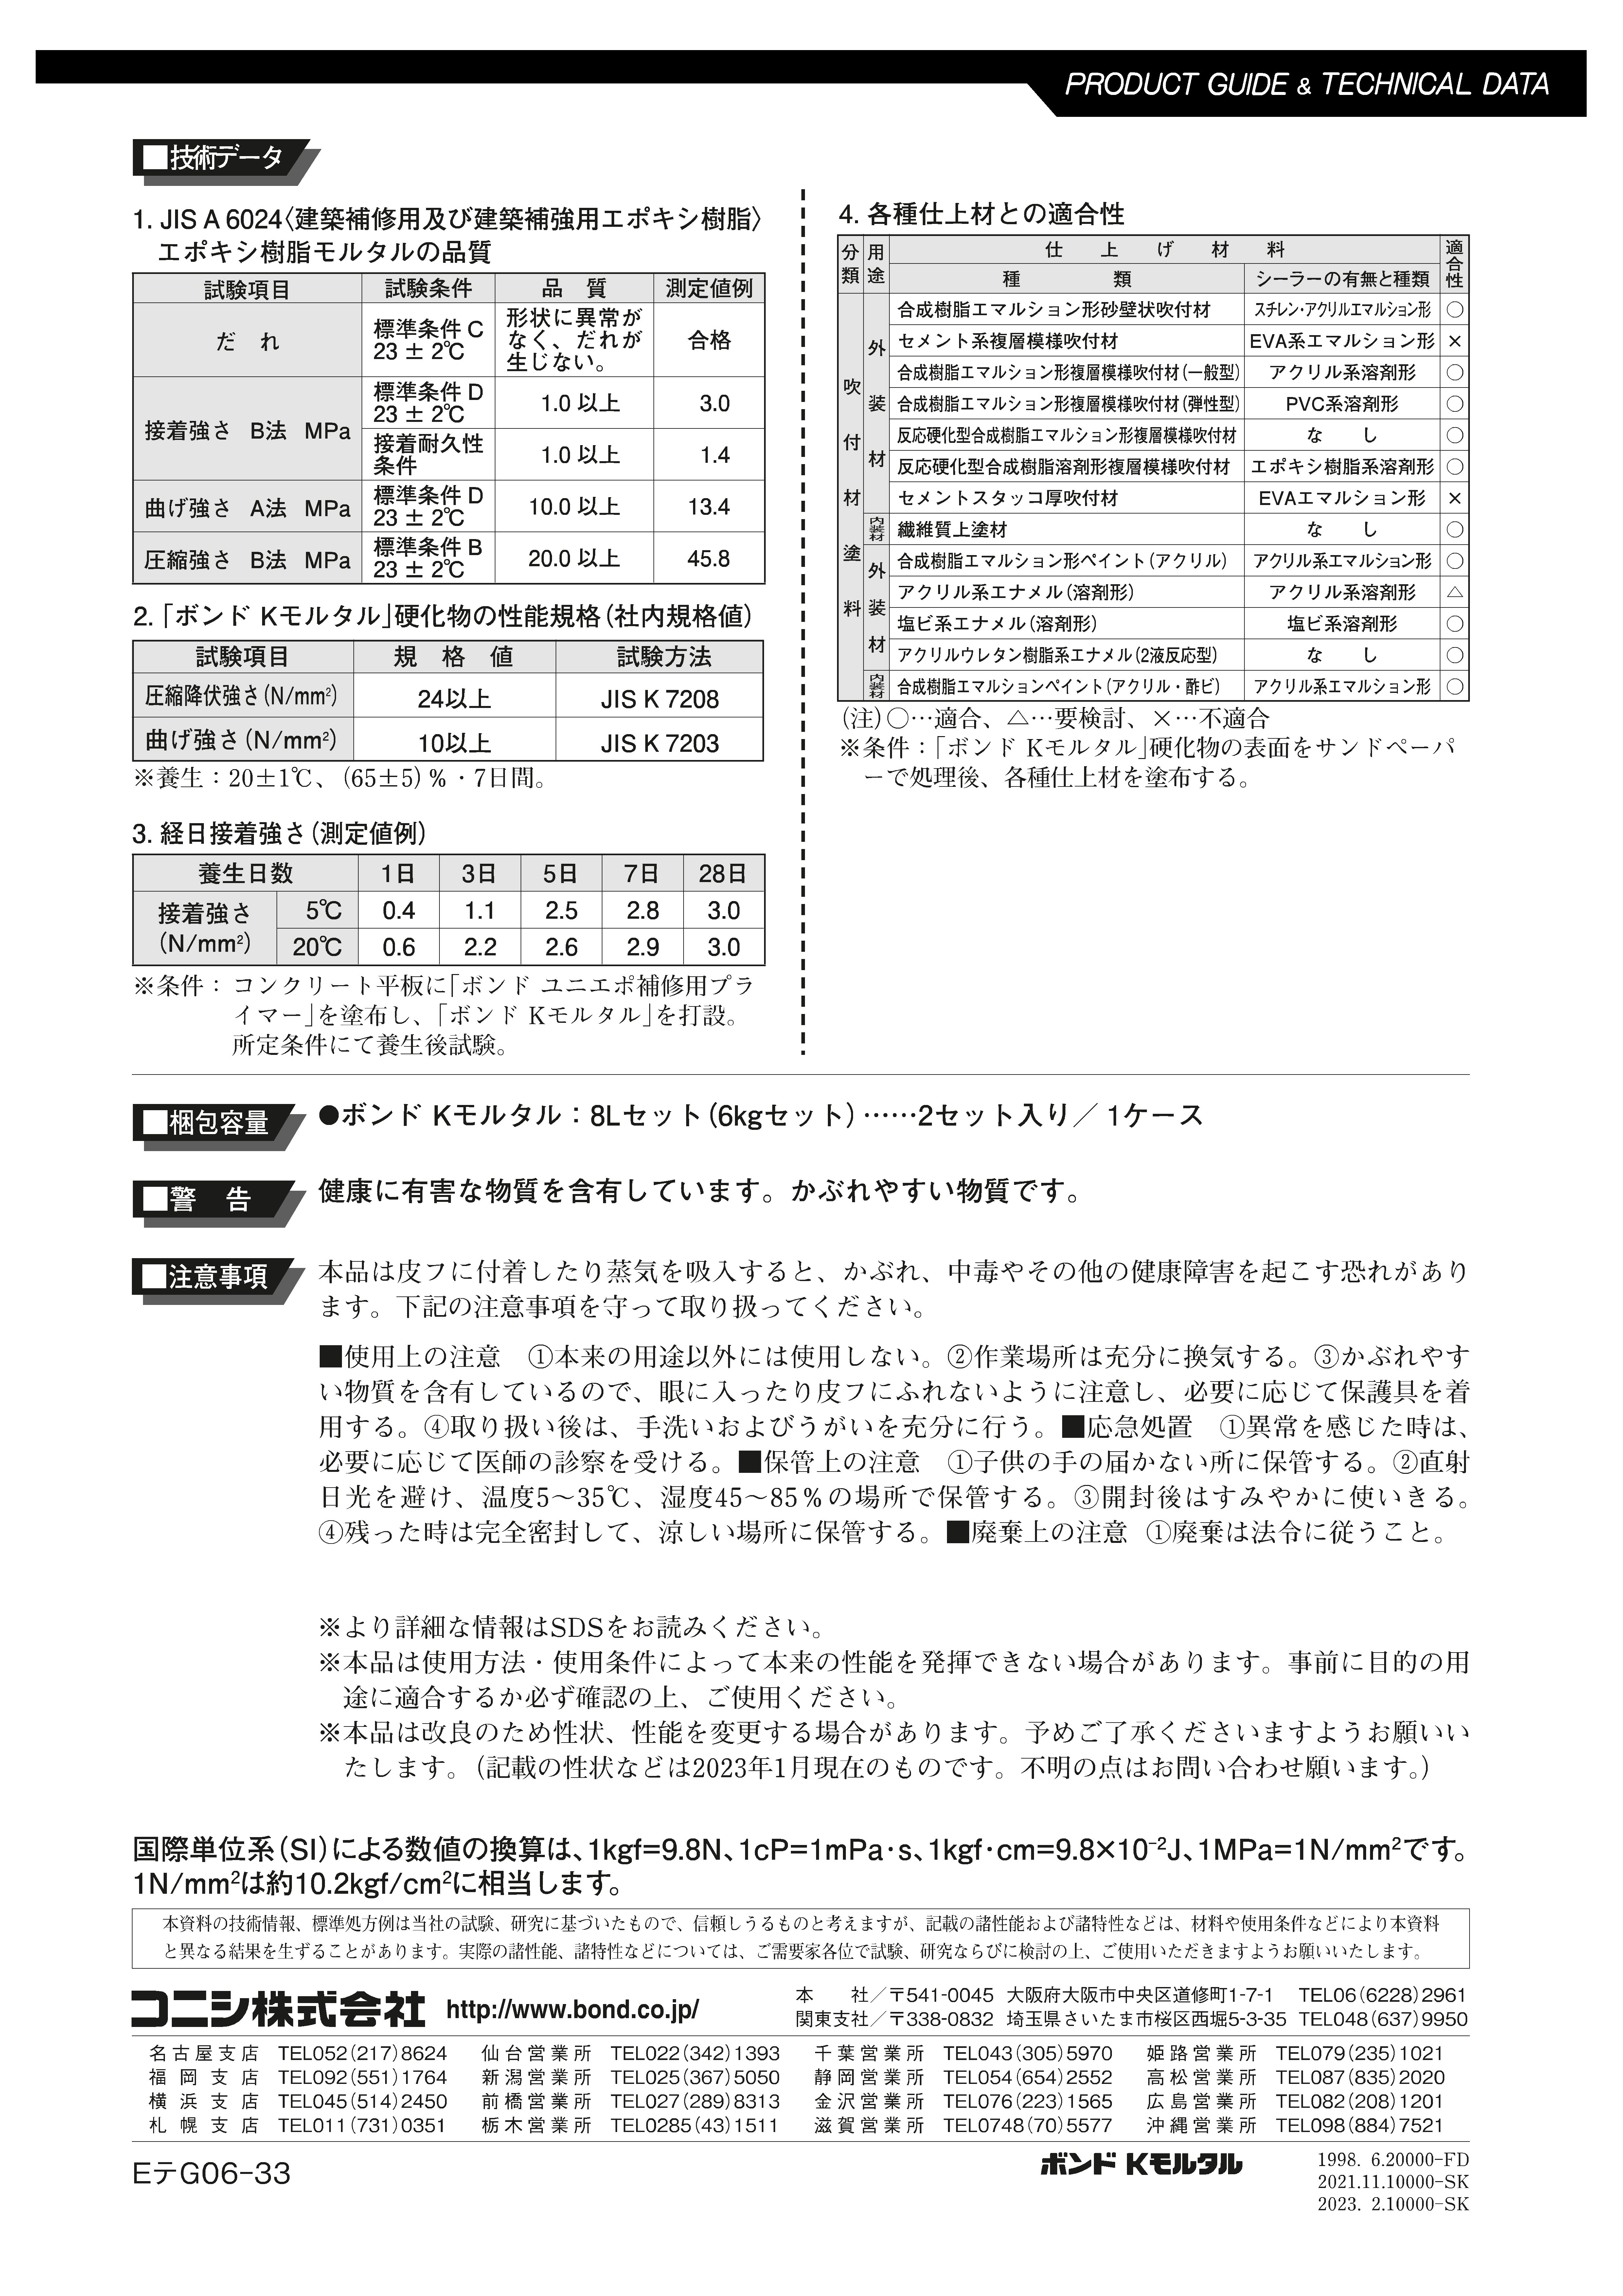 ボンドＫモルタル ８Ｌ 化研マテリアルグループ オンライン注文サービス